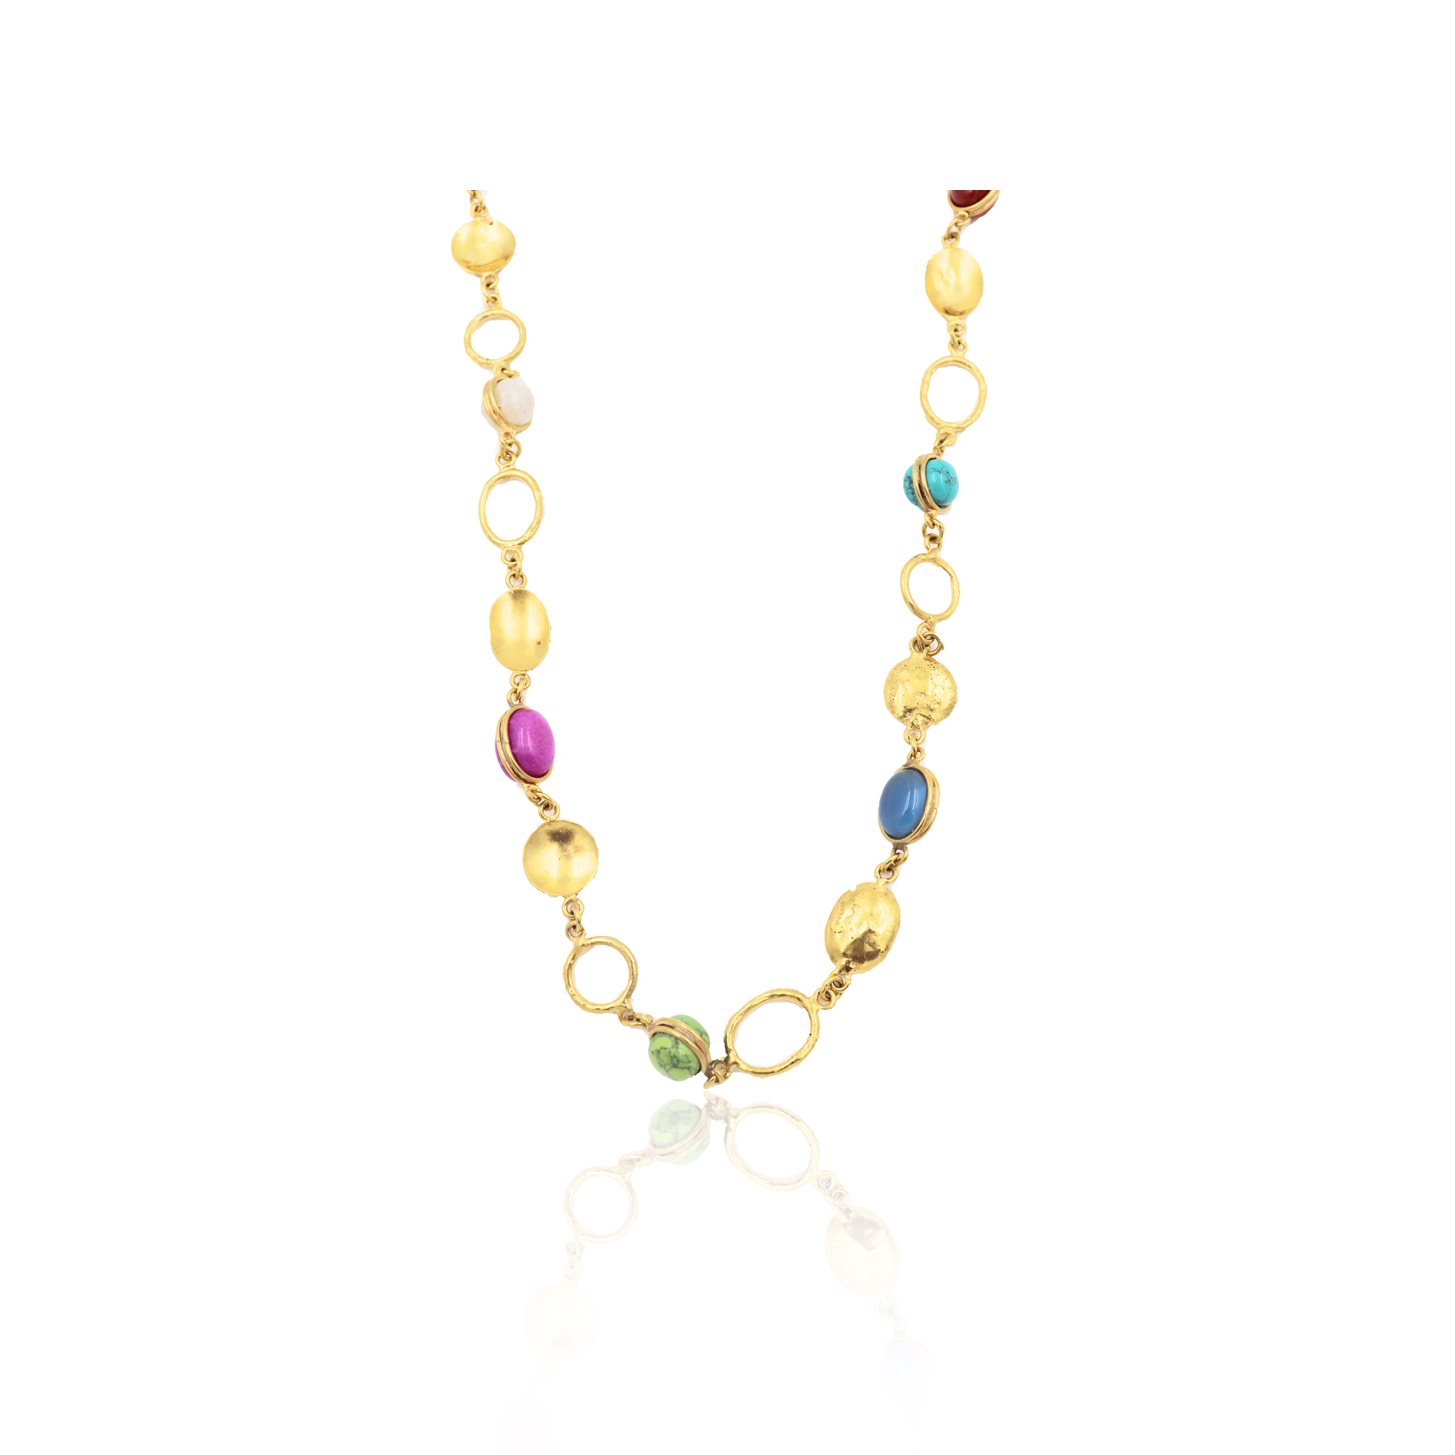 Sylvia Toledano Jewelry